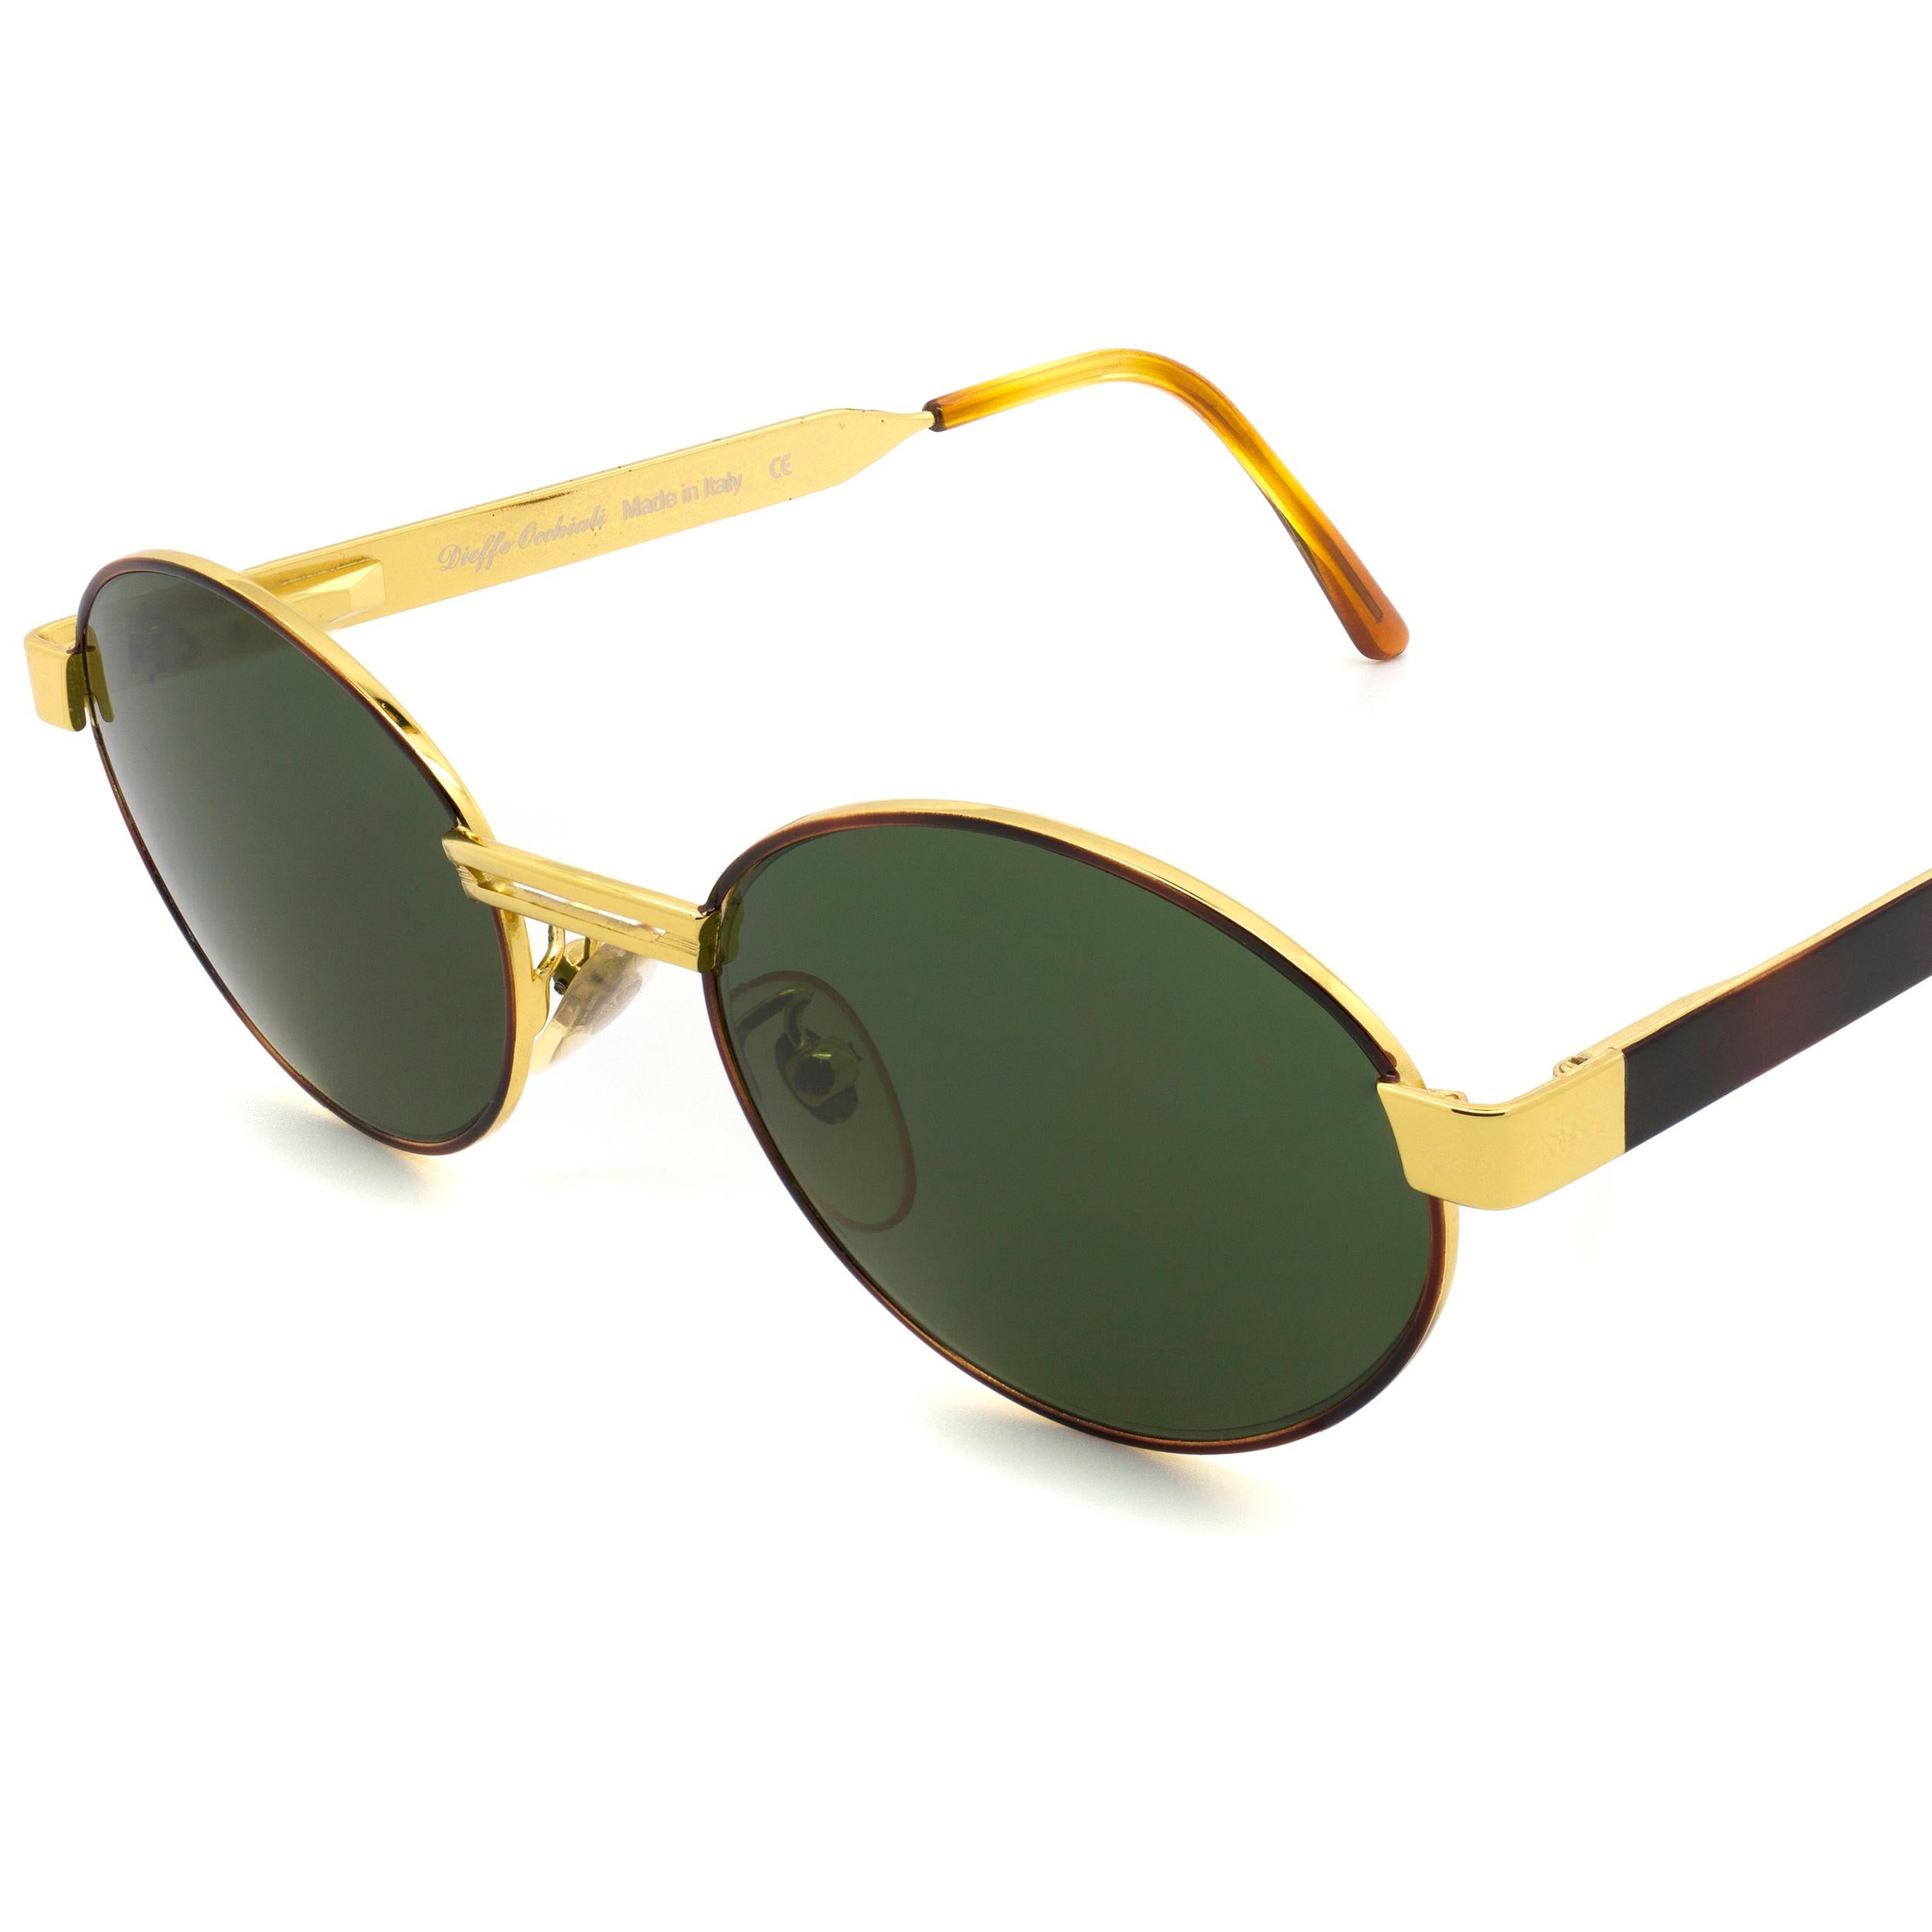 Top Gun vintage sunglasses In New Condition For Sale In Santa Clarita, CA